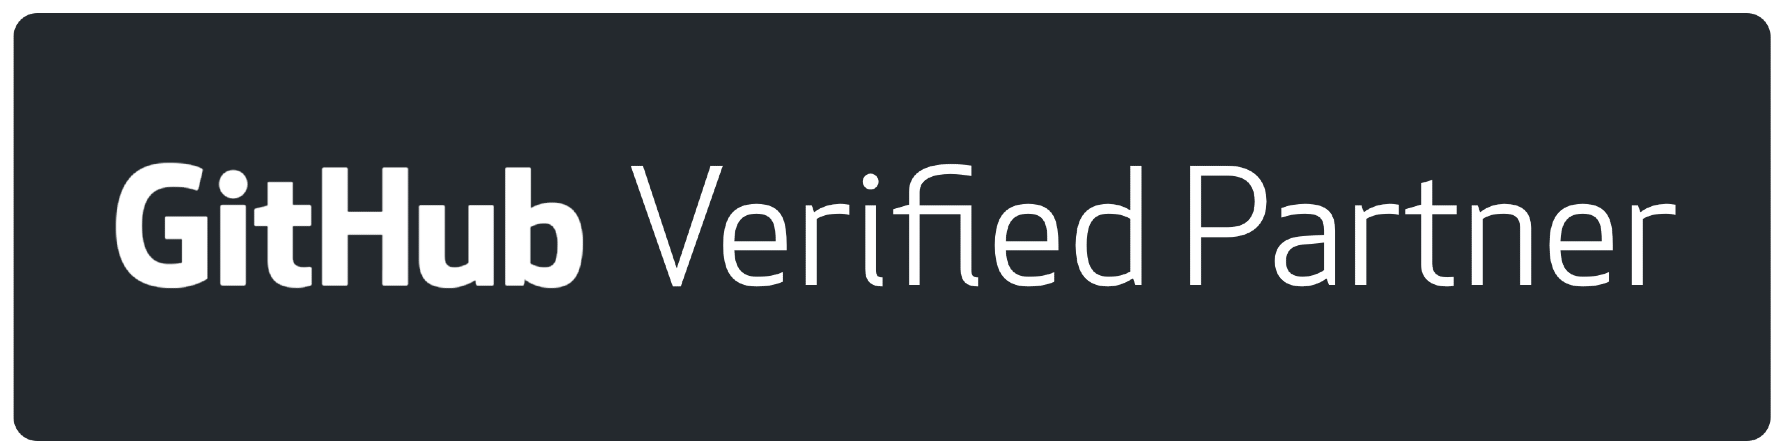 Github verified partner